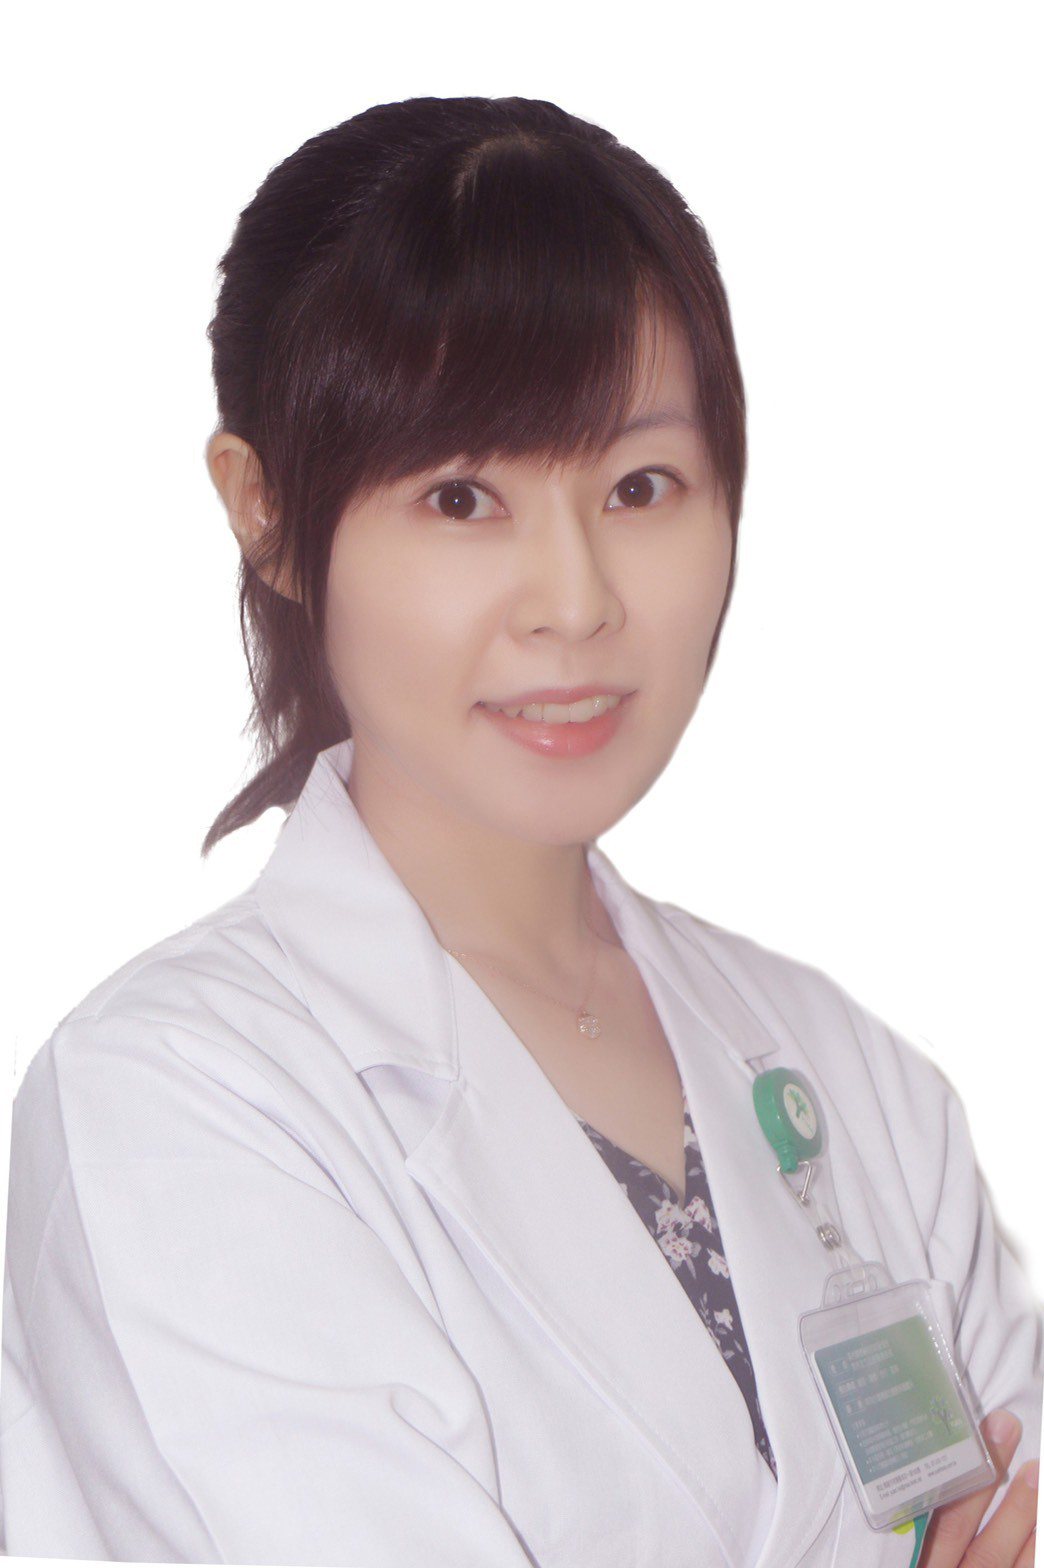 李怡萱醫師。